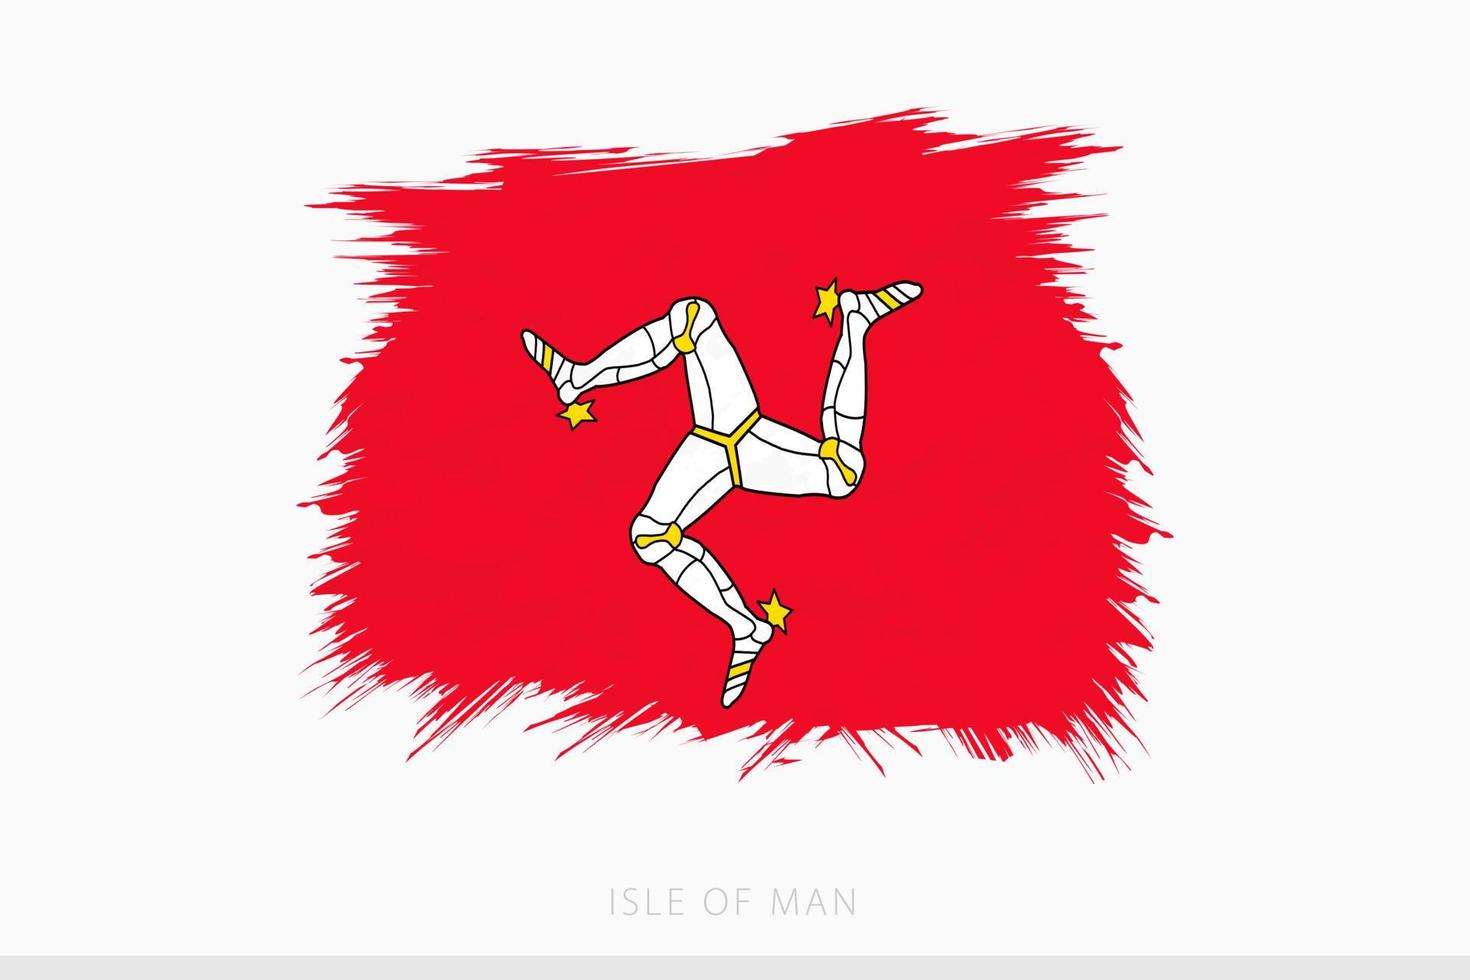 grunge bandera de isla de hombre, vector resumen grunge cepillado bandera de isla de hombre.